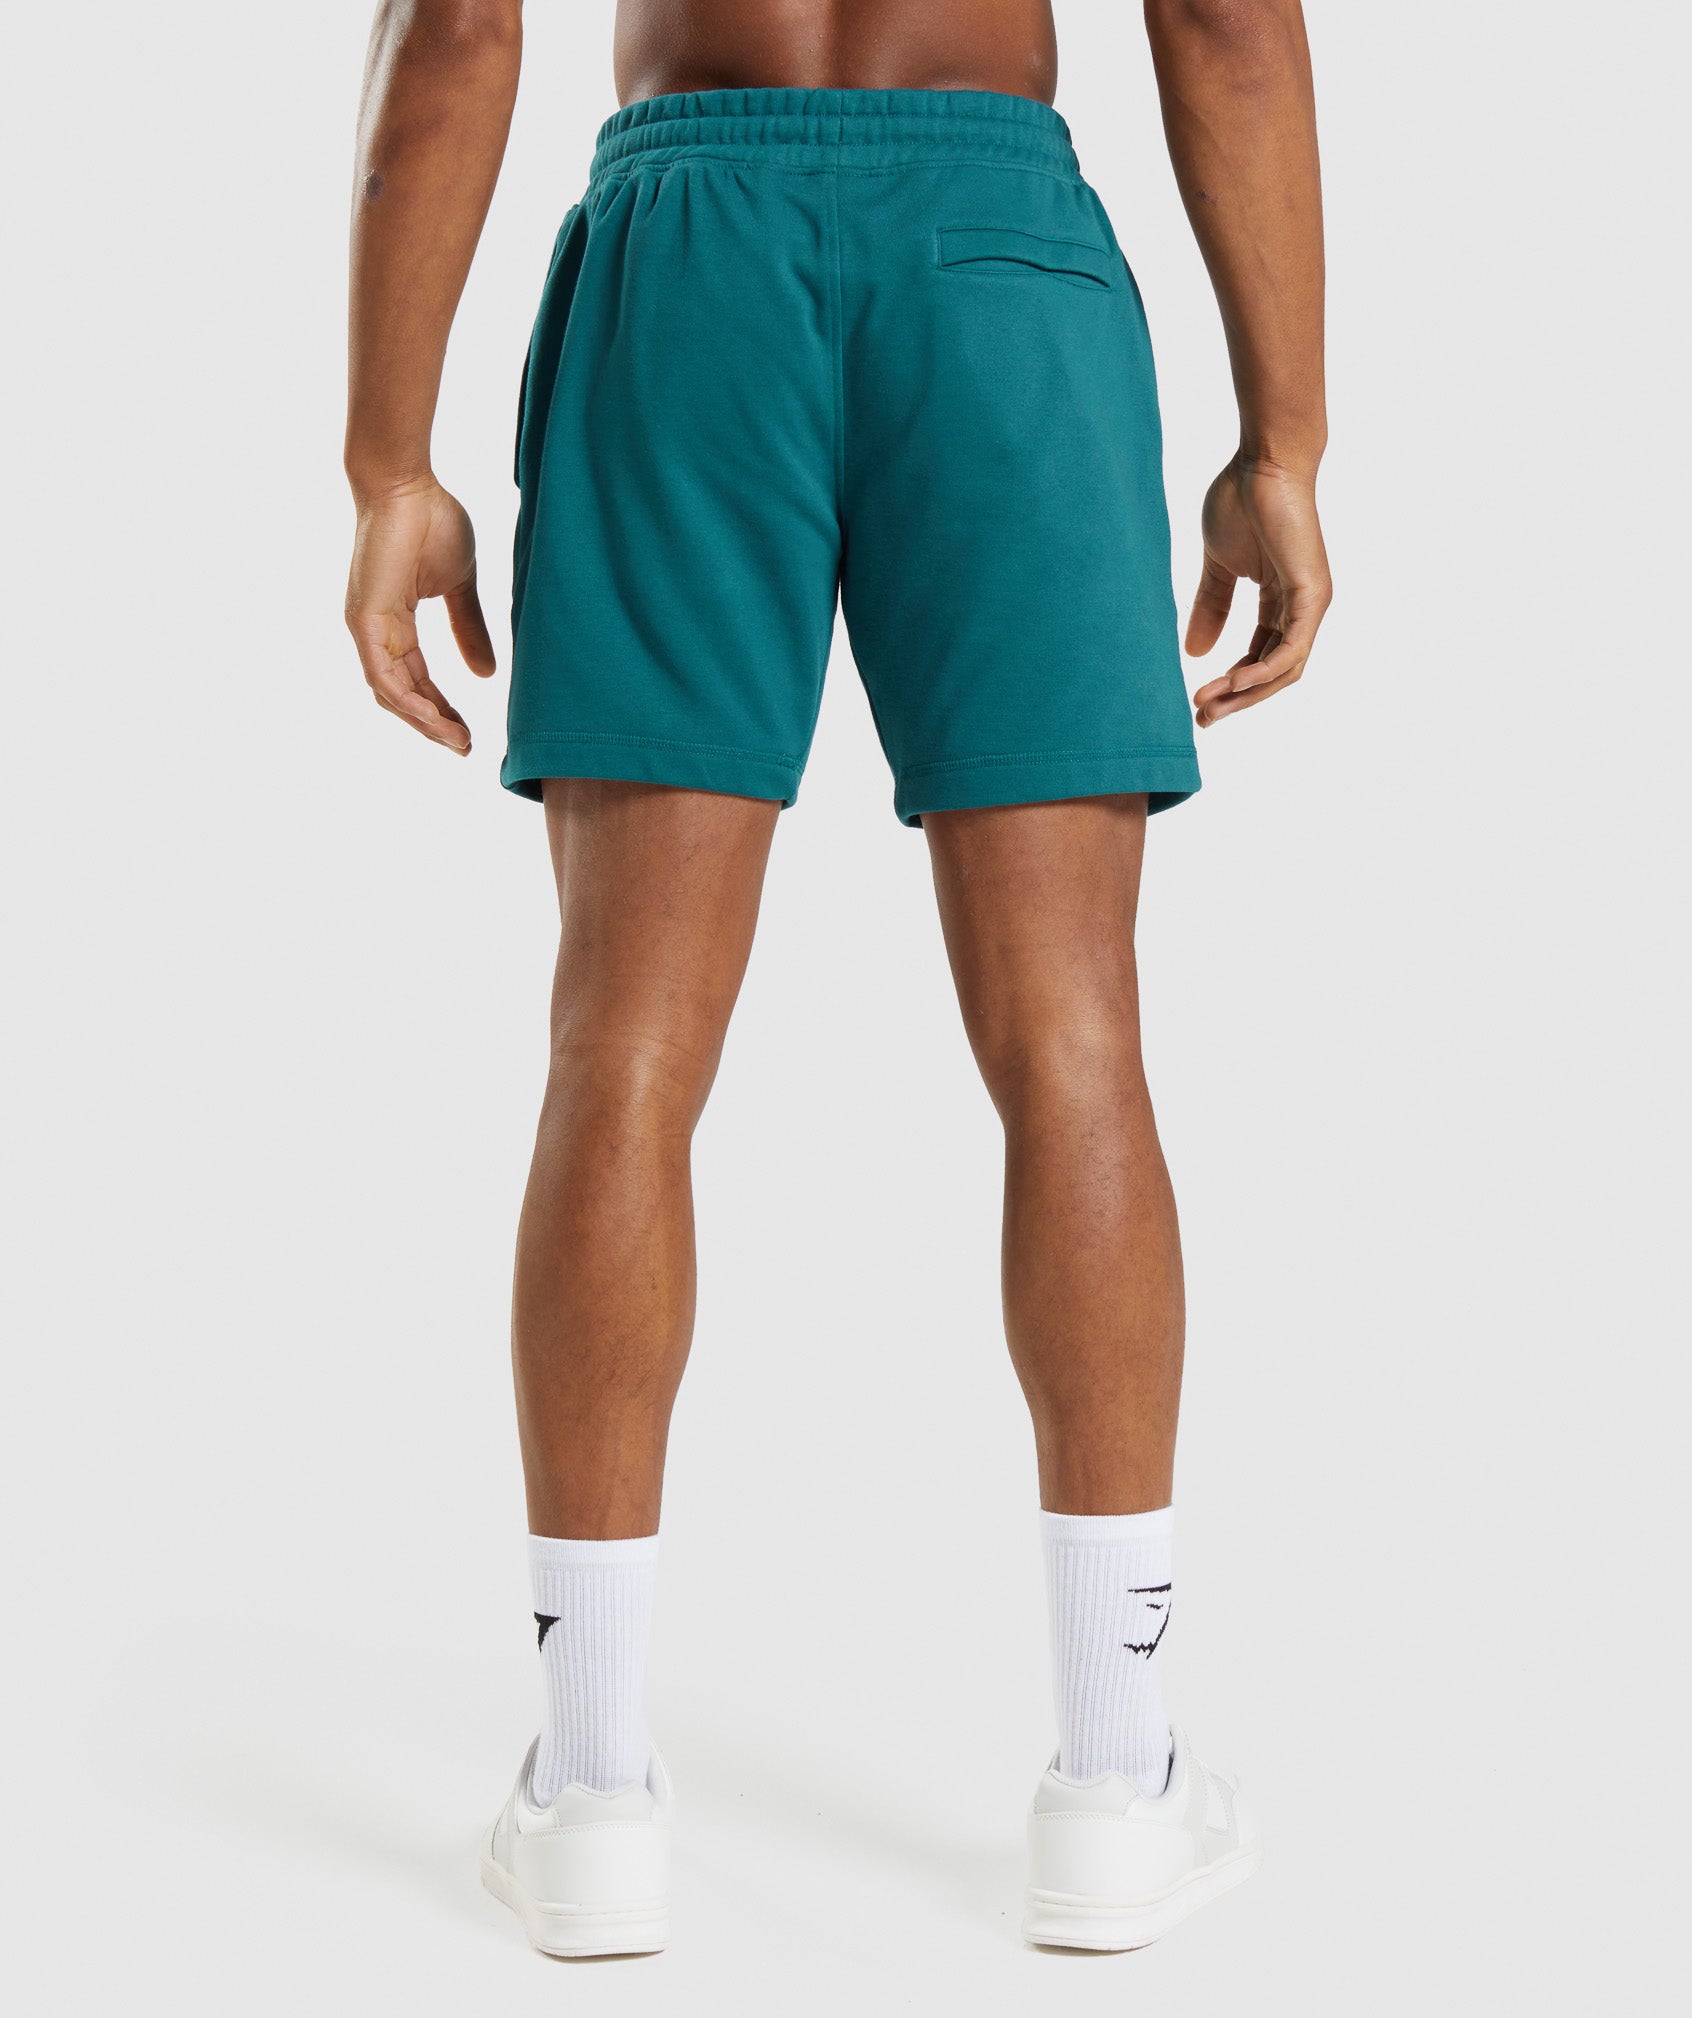 GSLC Shorts